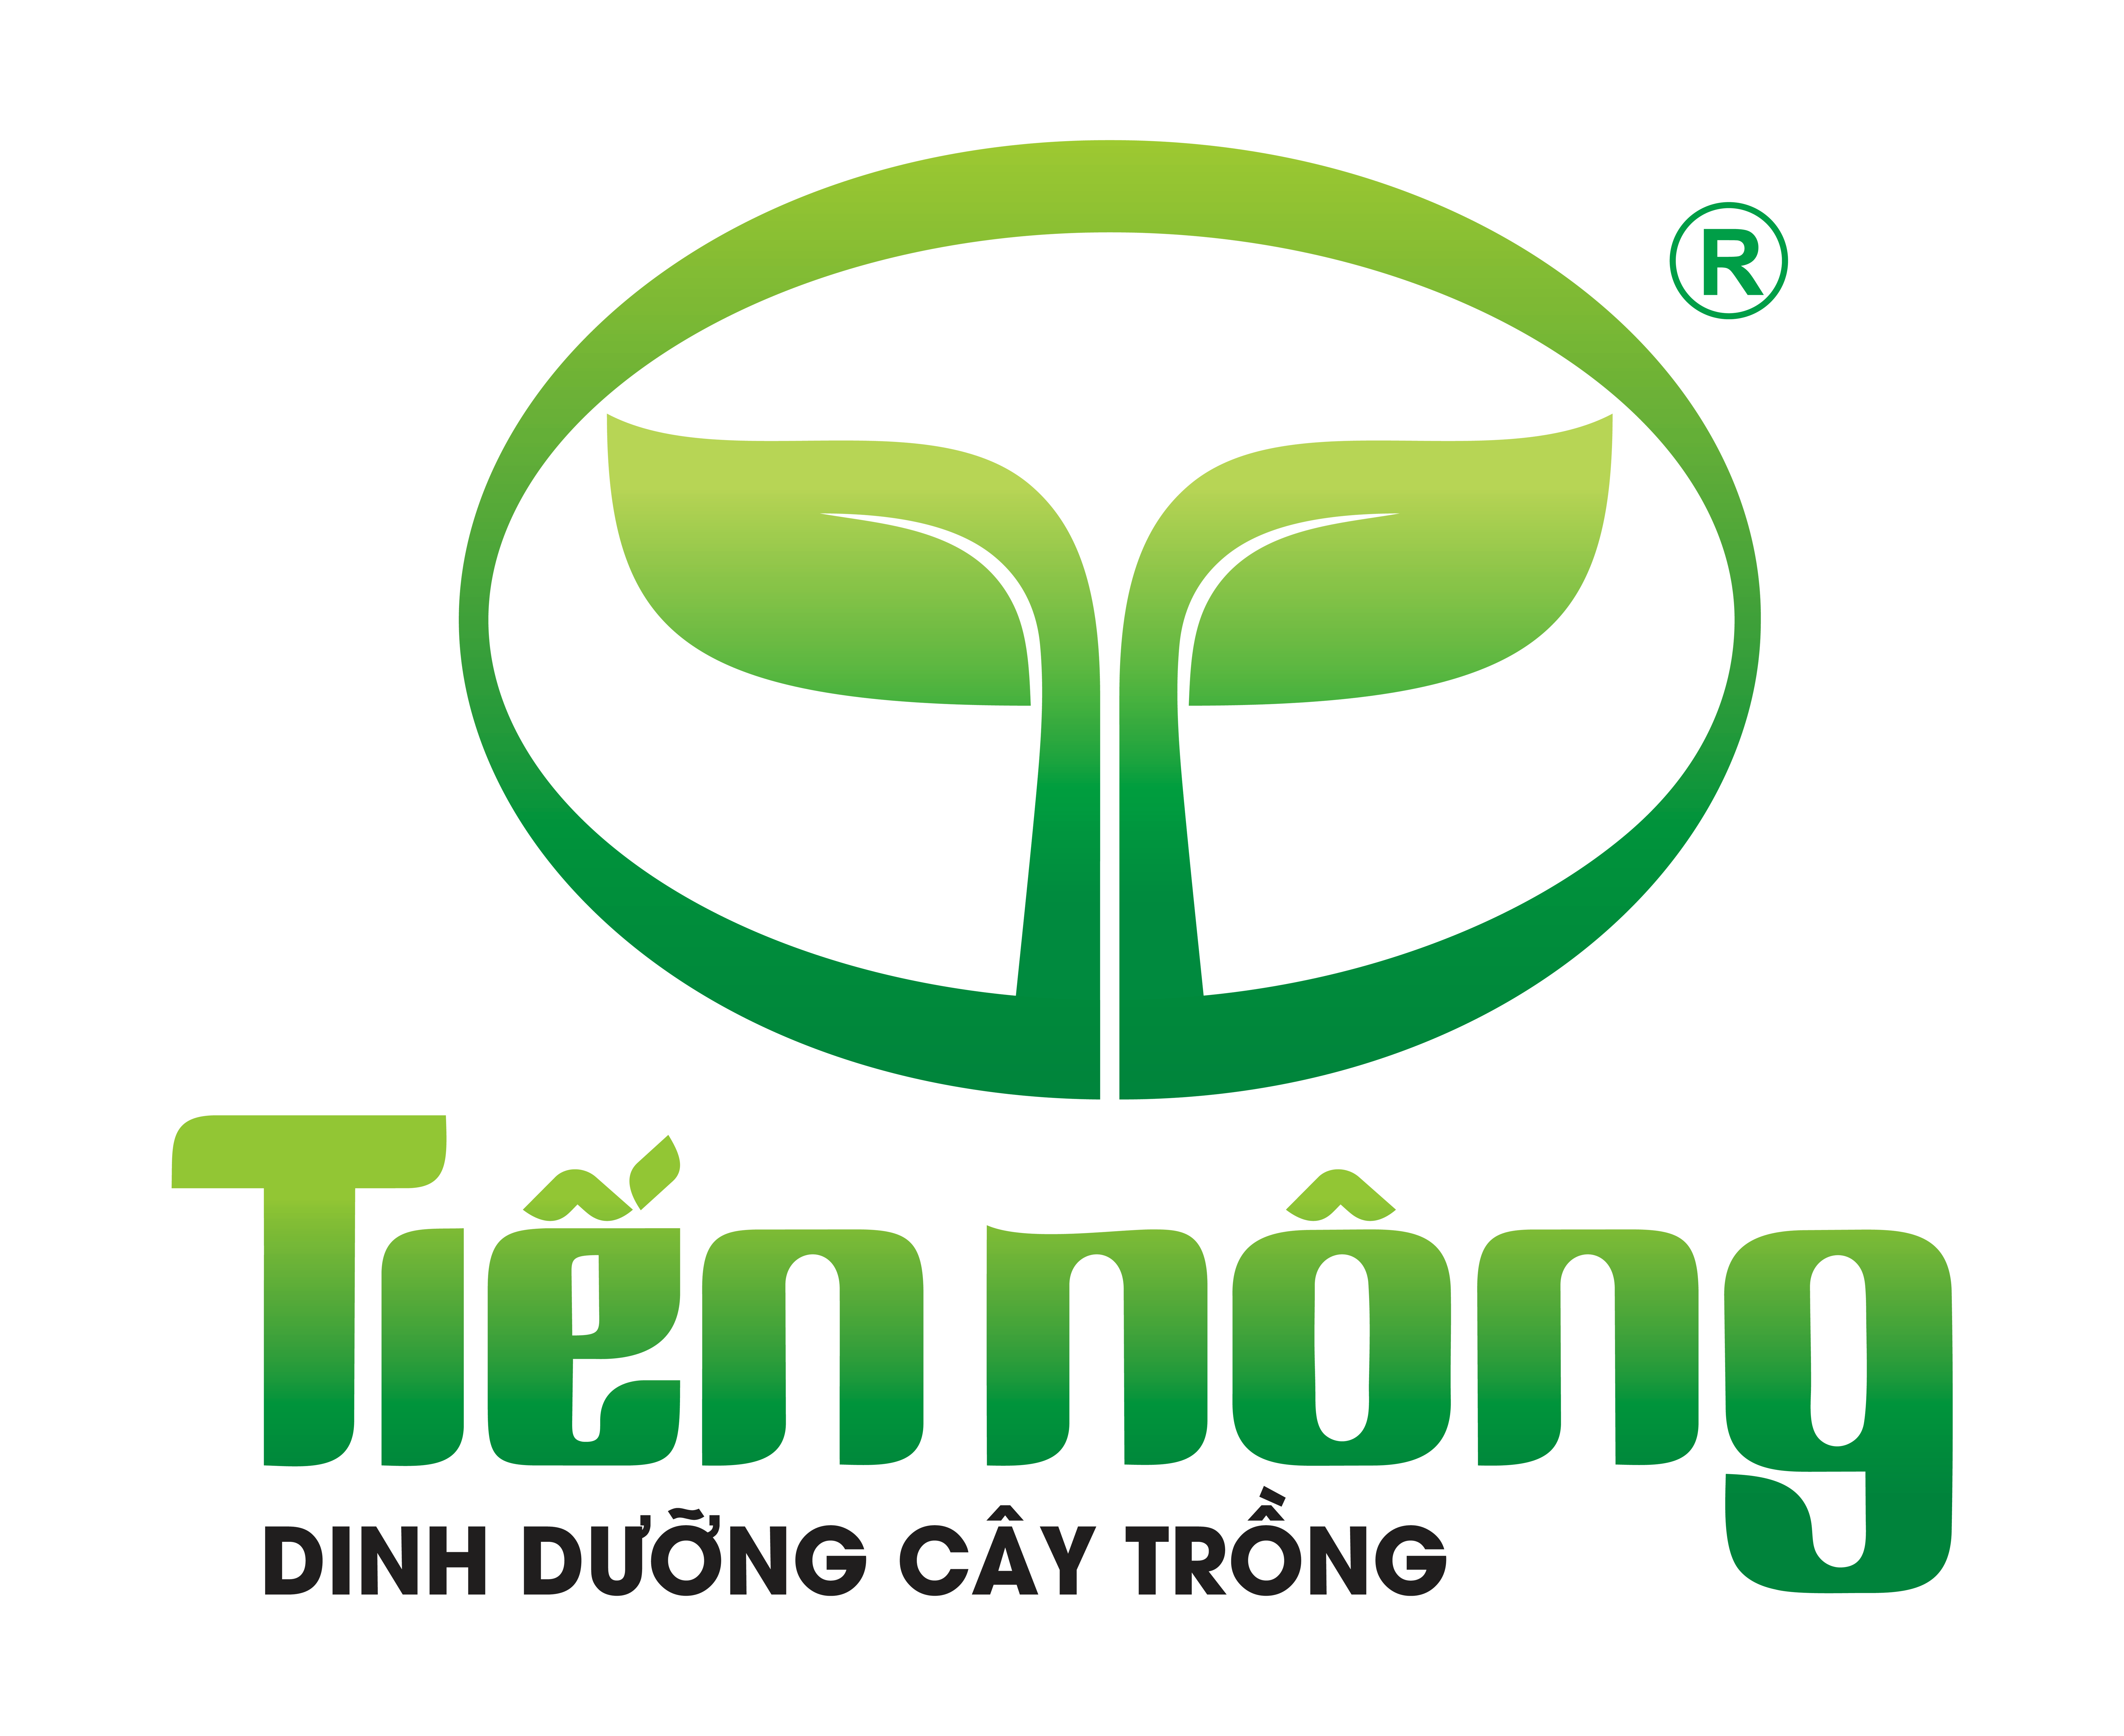 Logo Tiến Nông